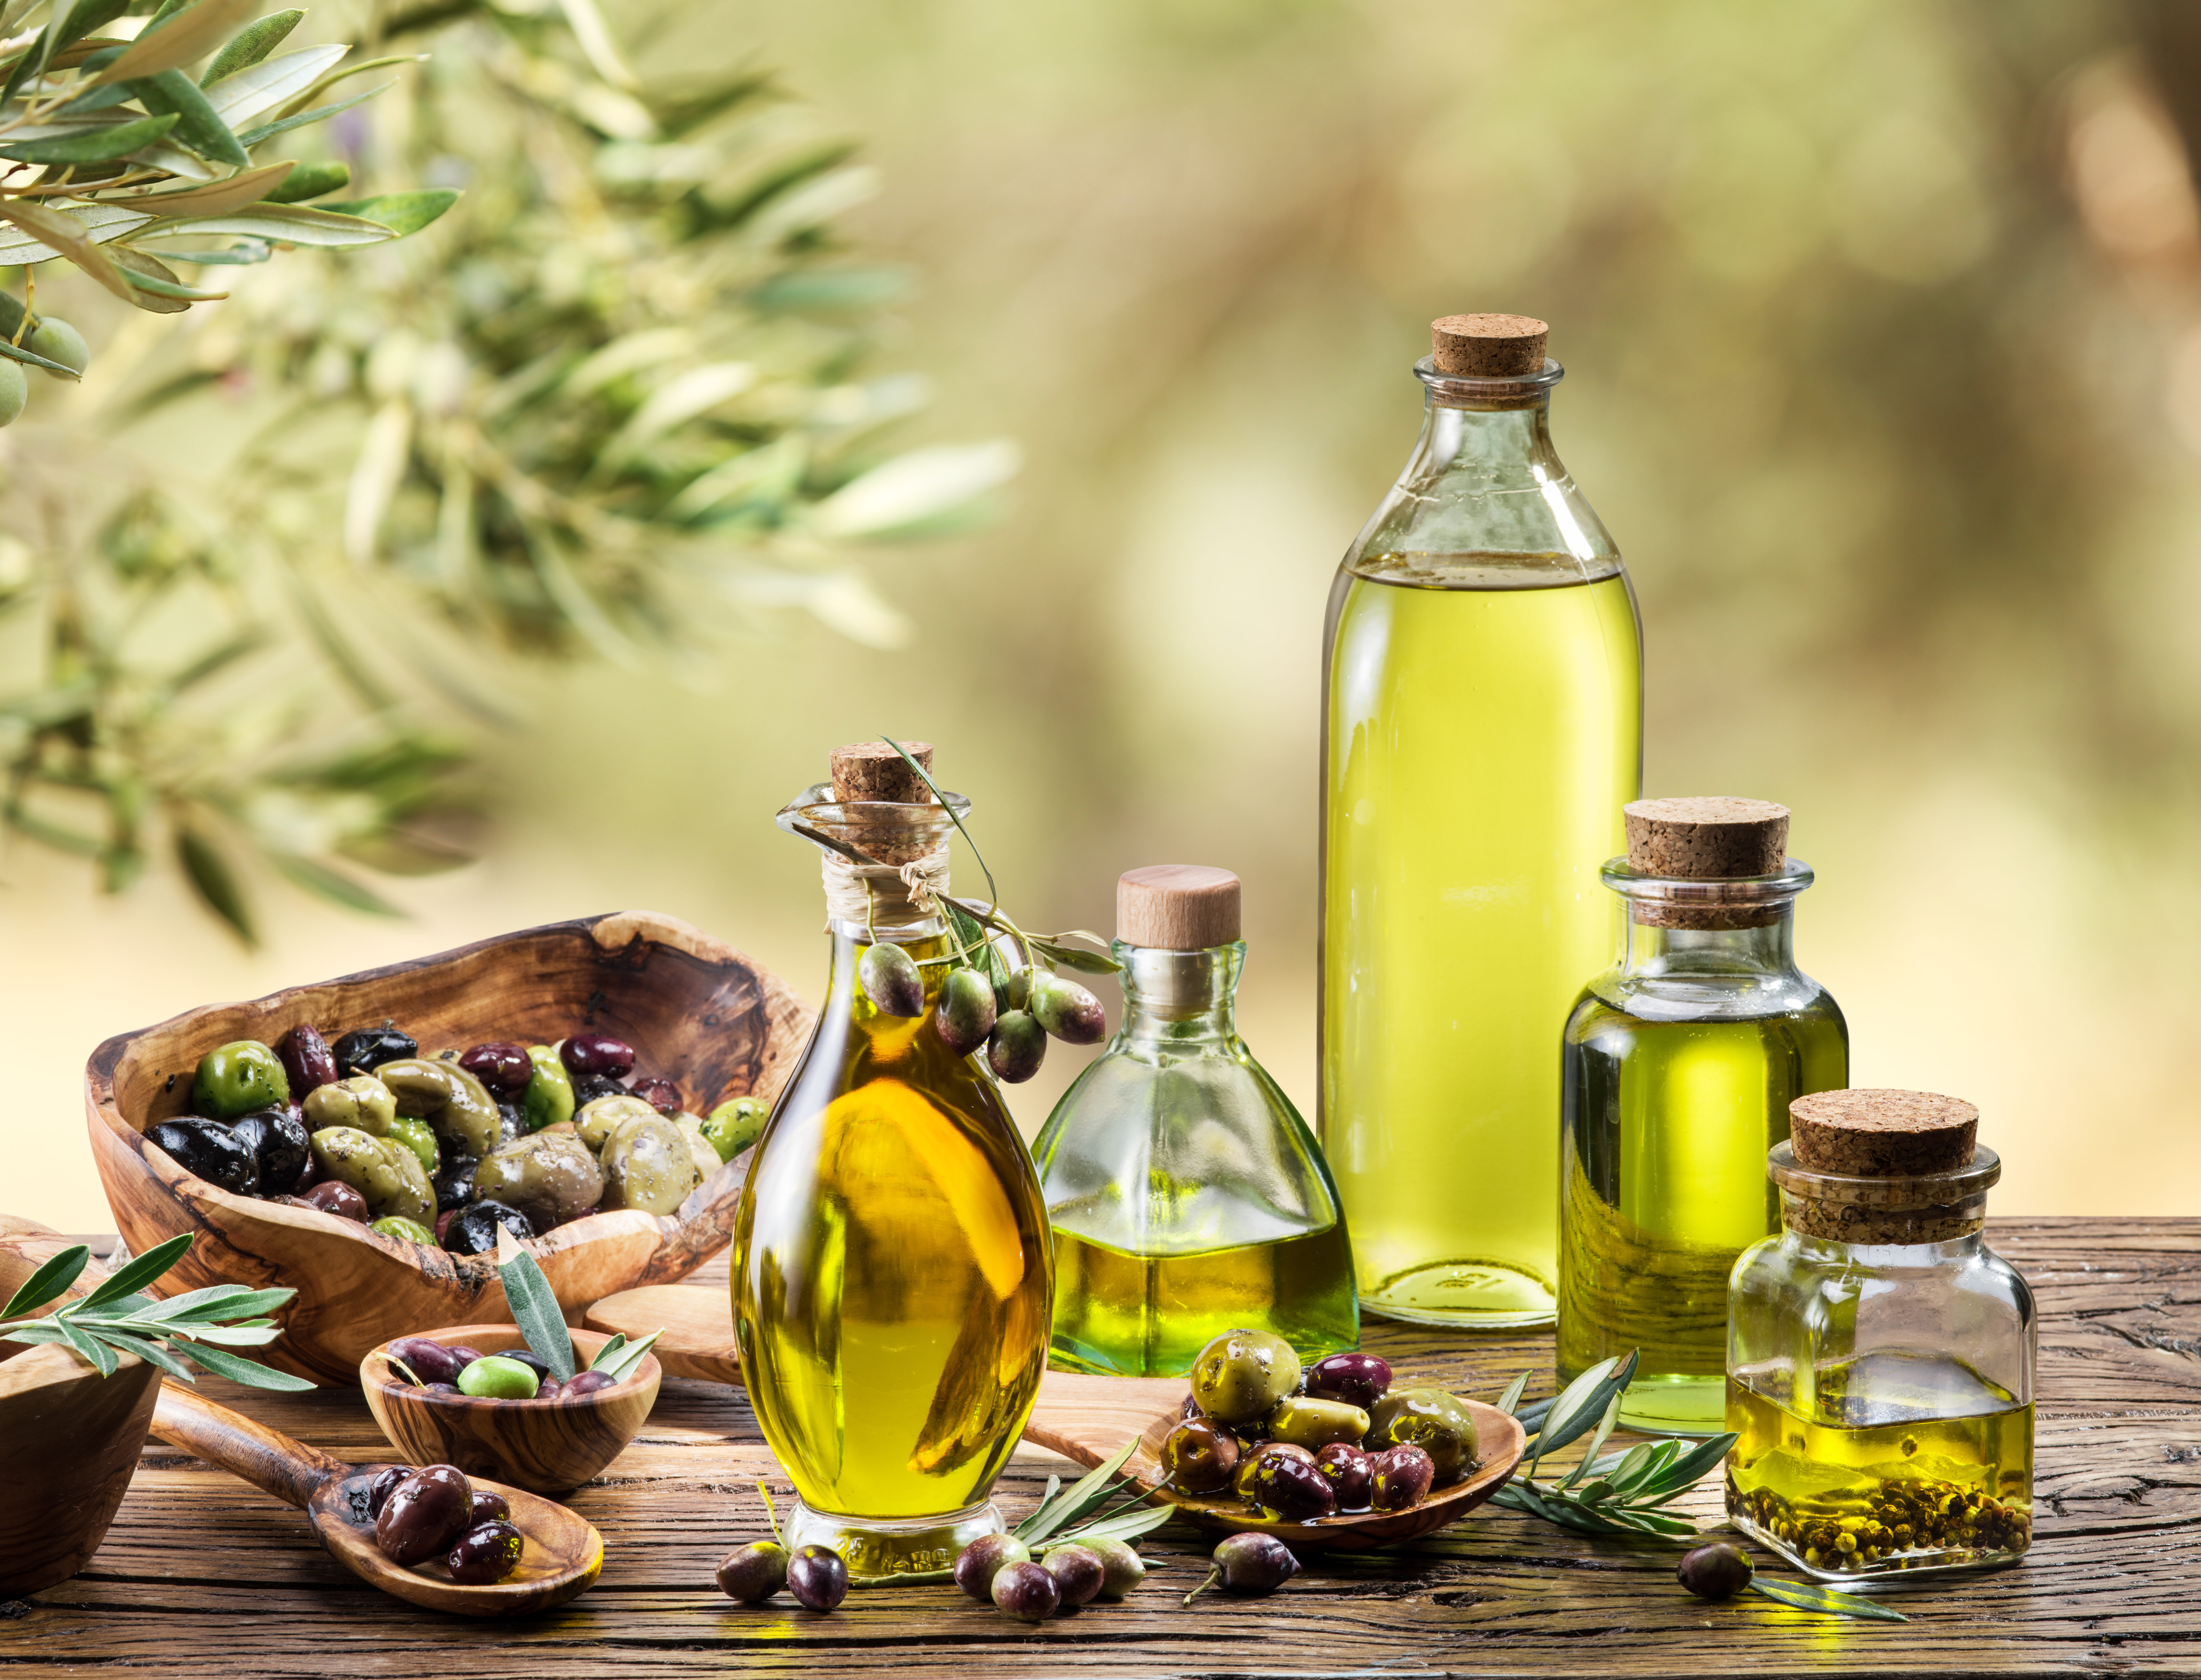 Ce este mai sănătos: uleiul de măsline obișnuit sau uleiul de măsline extravirgin?